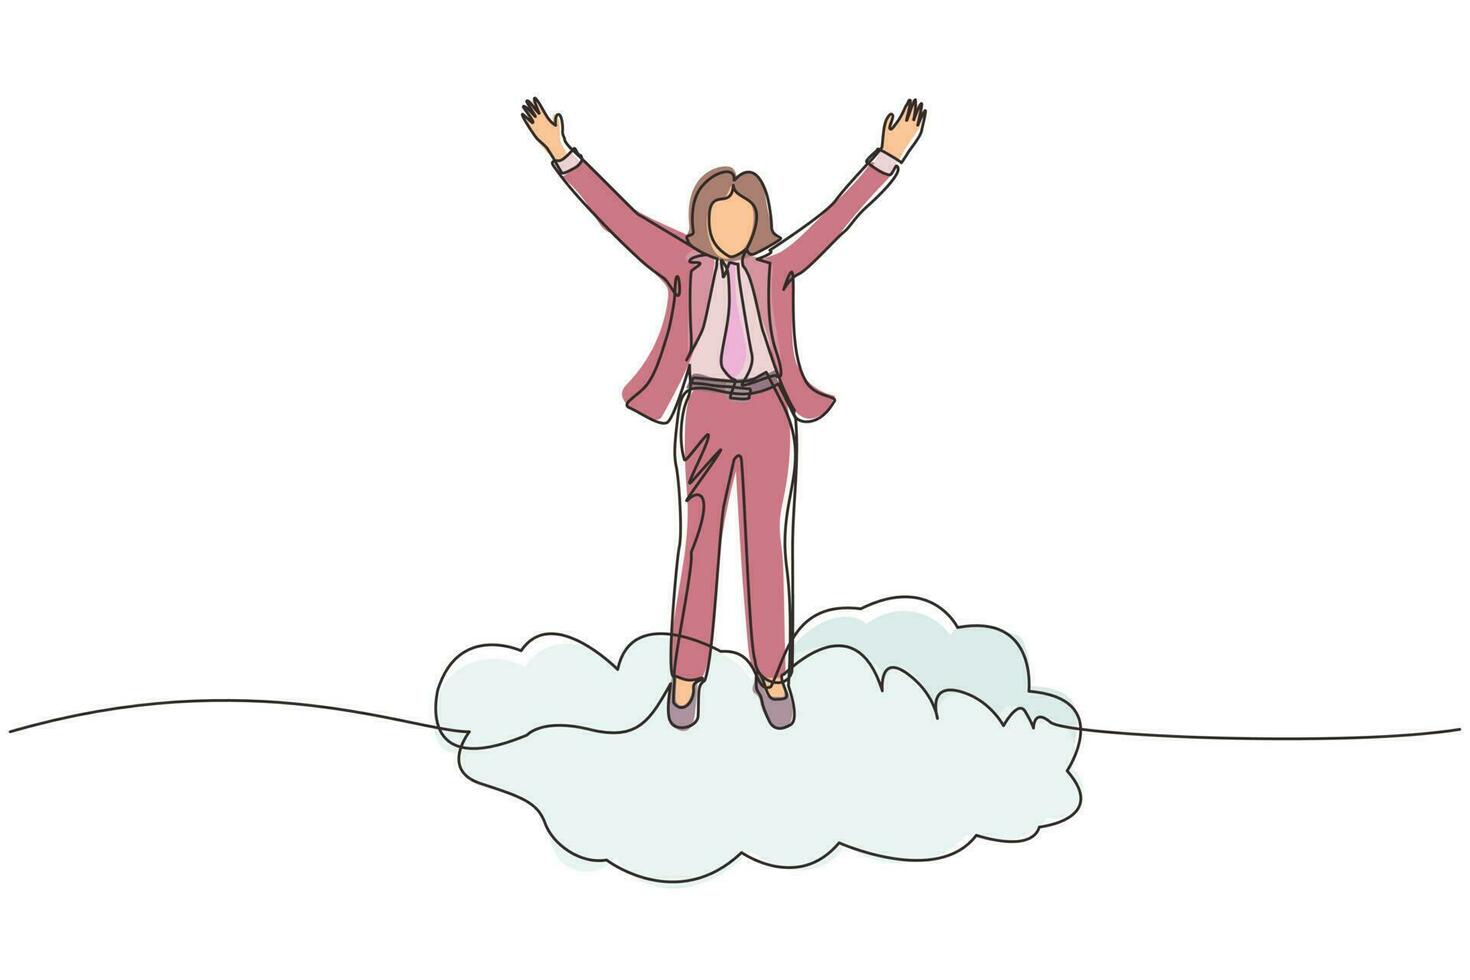 empresária de desenho de linha contínua em cima da nuvem com as mãos levantadas. conceito de negócio bem sucedido. liberdade financeira, felicidade, paz. ilustração gráfica de vetor de desenho de linha única